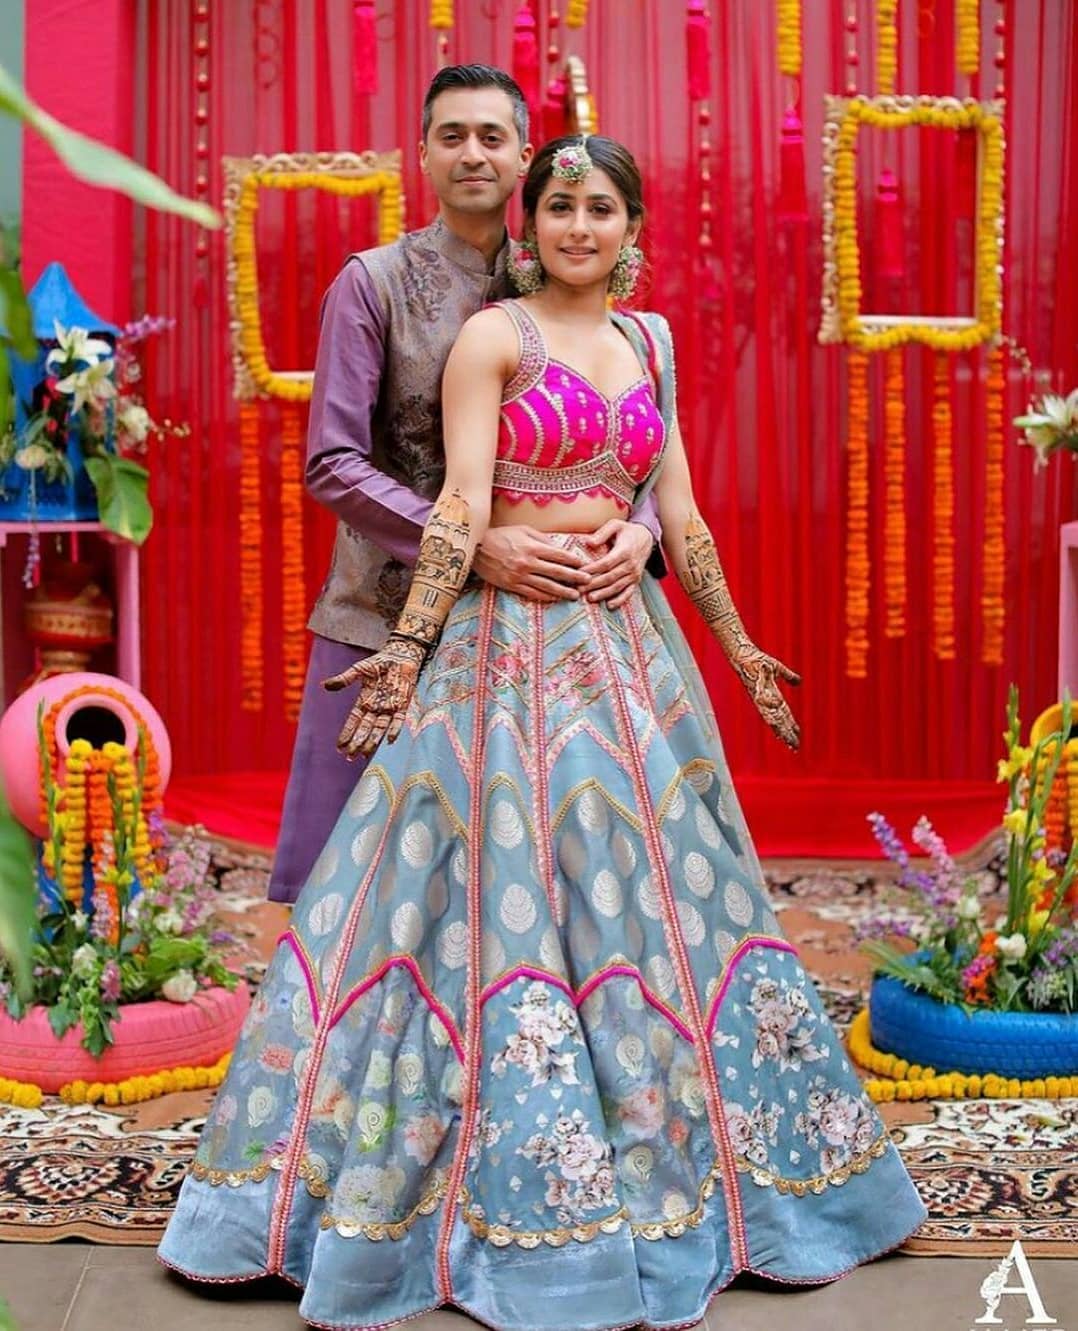 Best couple pose with lehenga and sherwani | Couple wedding dress, Indian  bride photography poses, Wedding couple poses